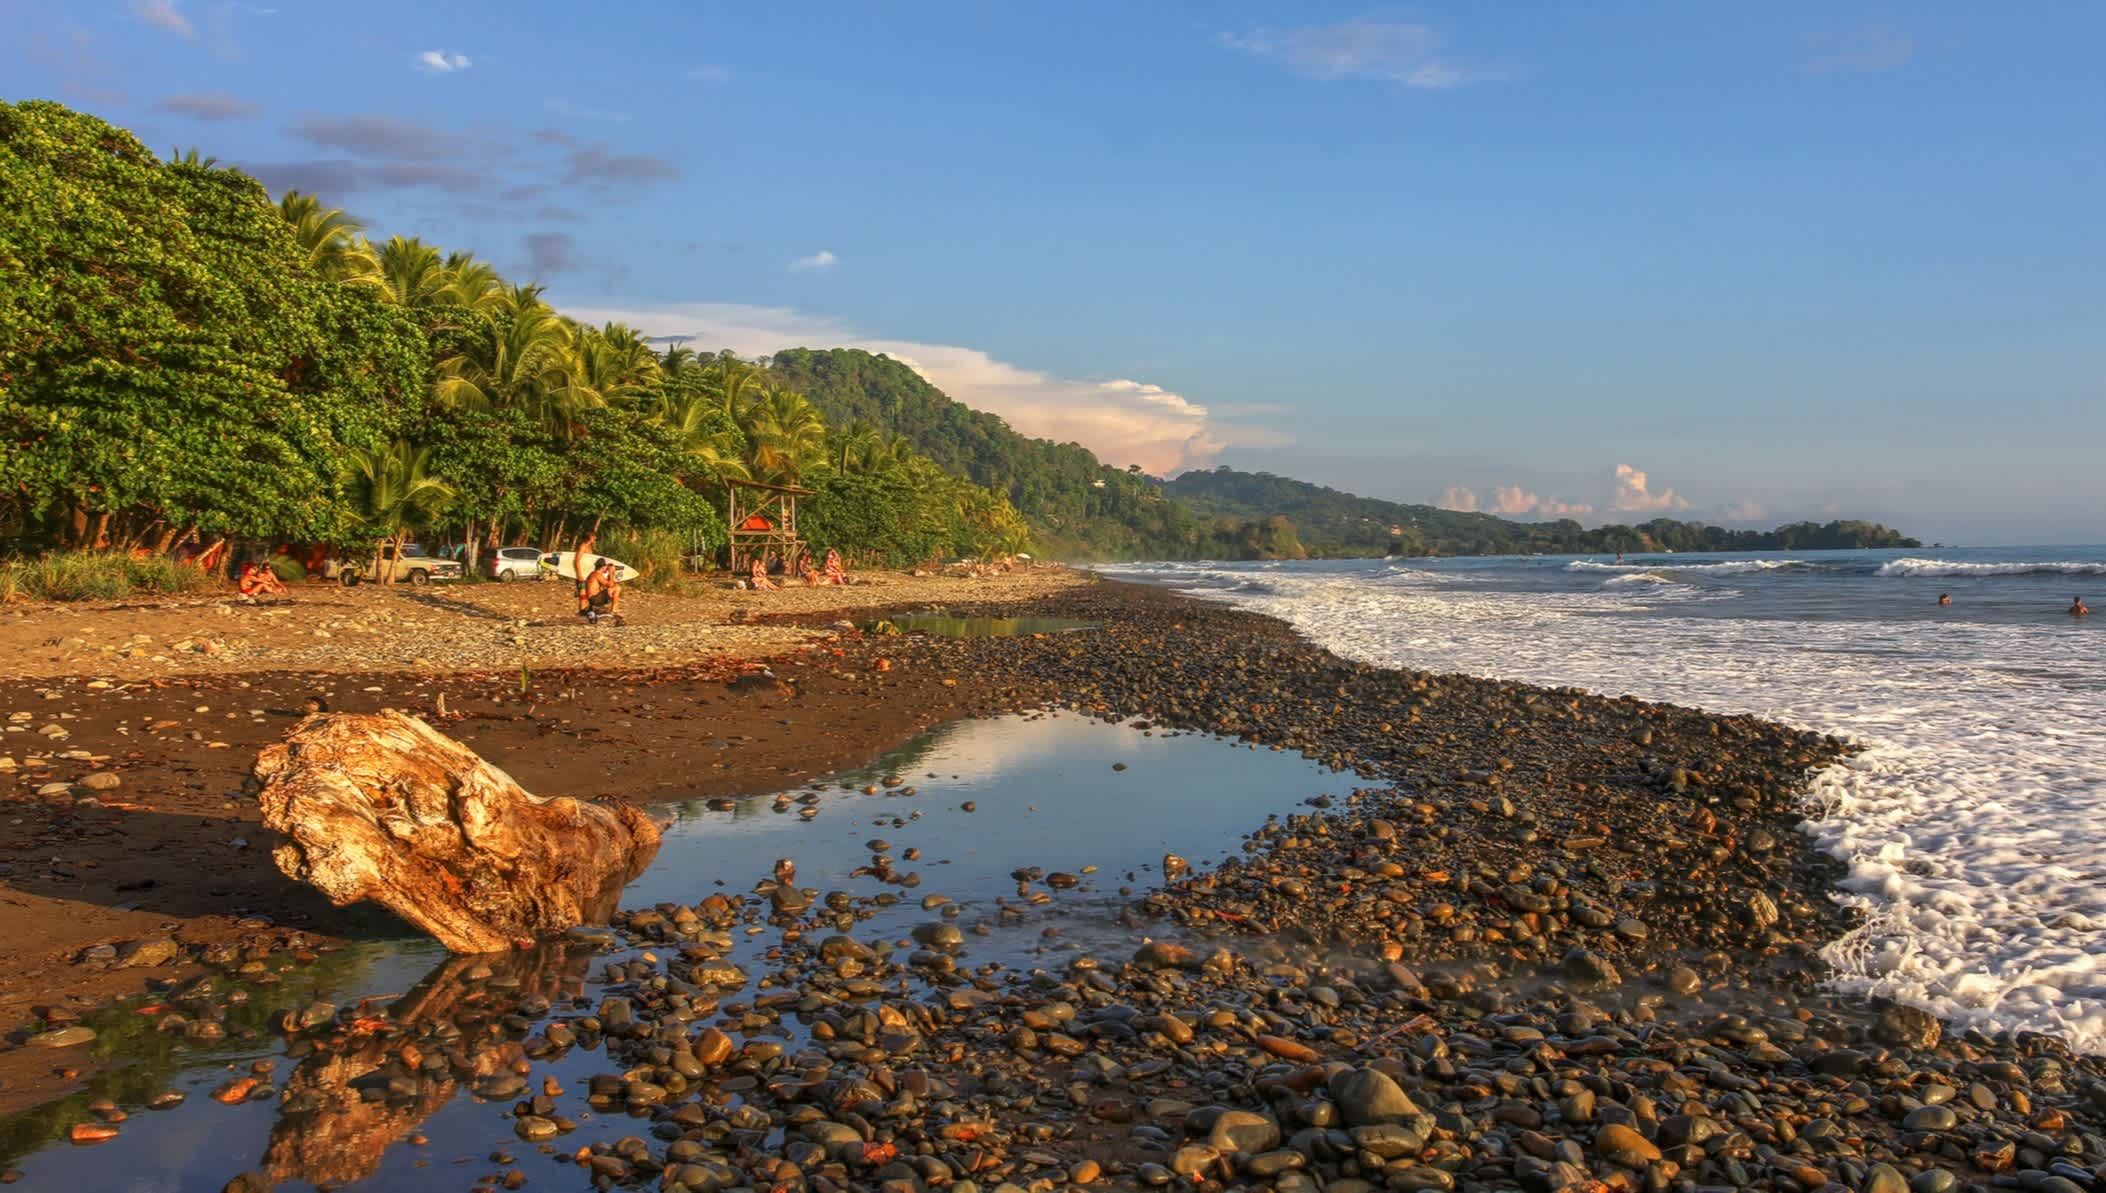 La Playa Dominical au Costa Rica est une destination pour les surfeurs.
